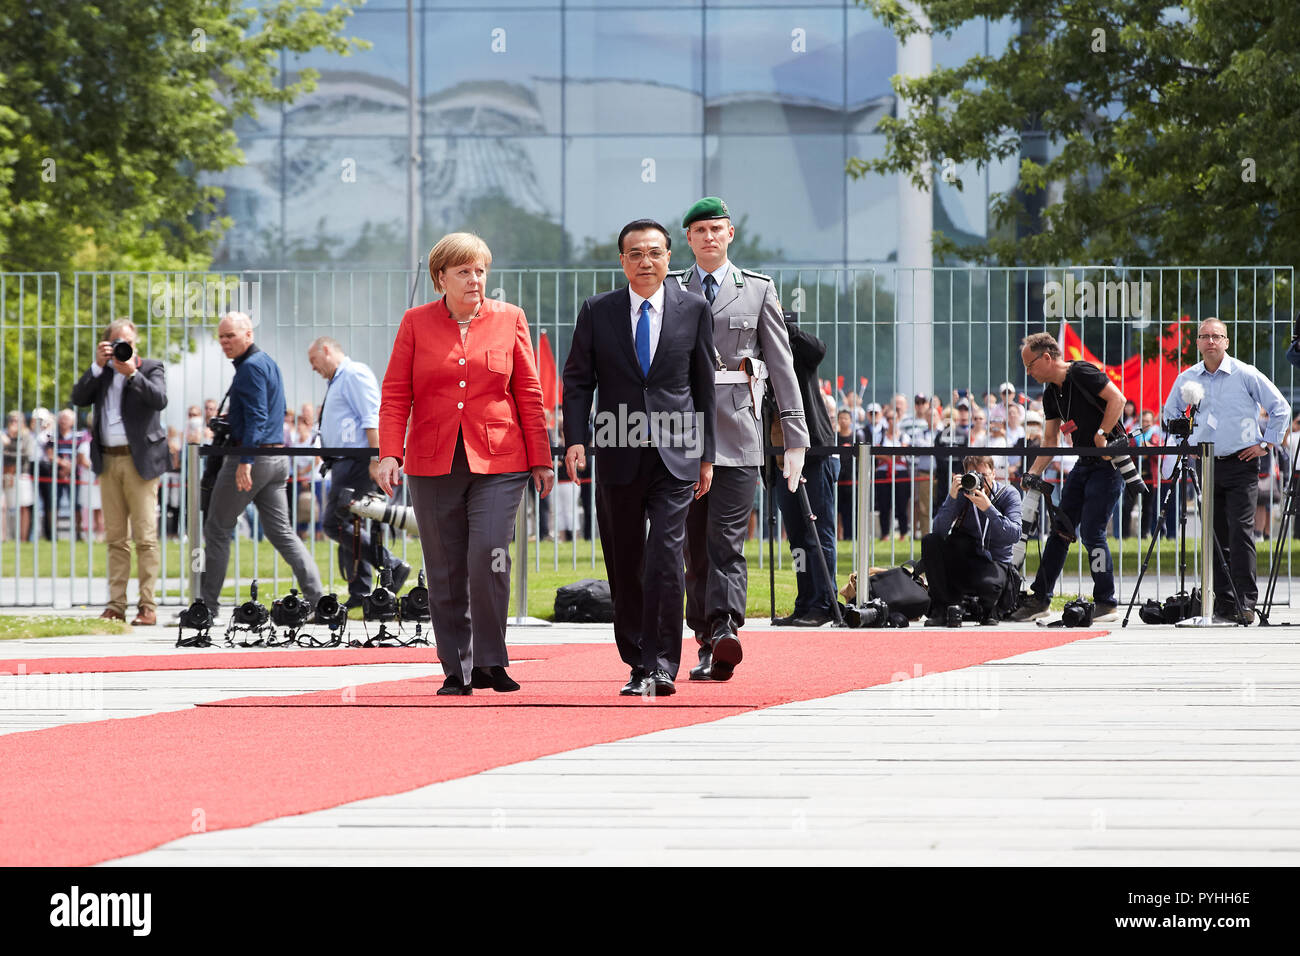 Berlin, Allemagne - La Chancelière allemande Angela Merkel reçoit le premier ministre chinois Li Keqiang avec honneurs militaires dans la cour de la Chancellerie fédérale d'honneur. Banque D'Images